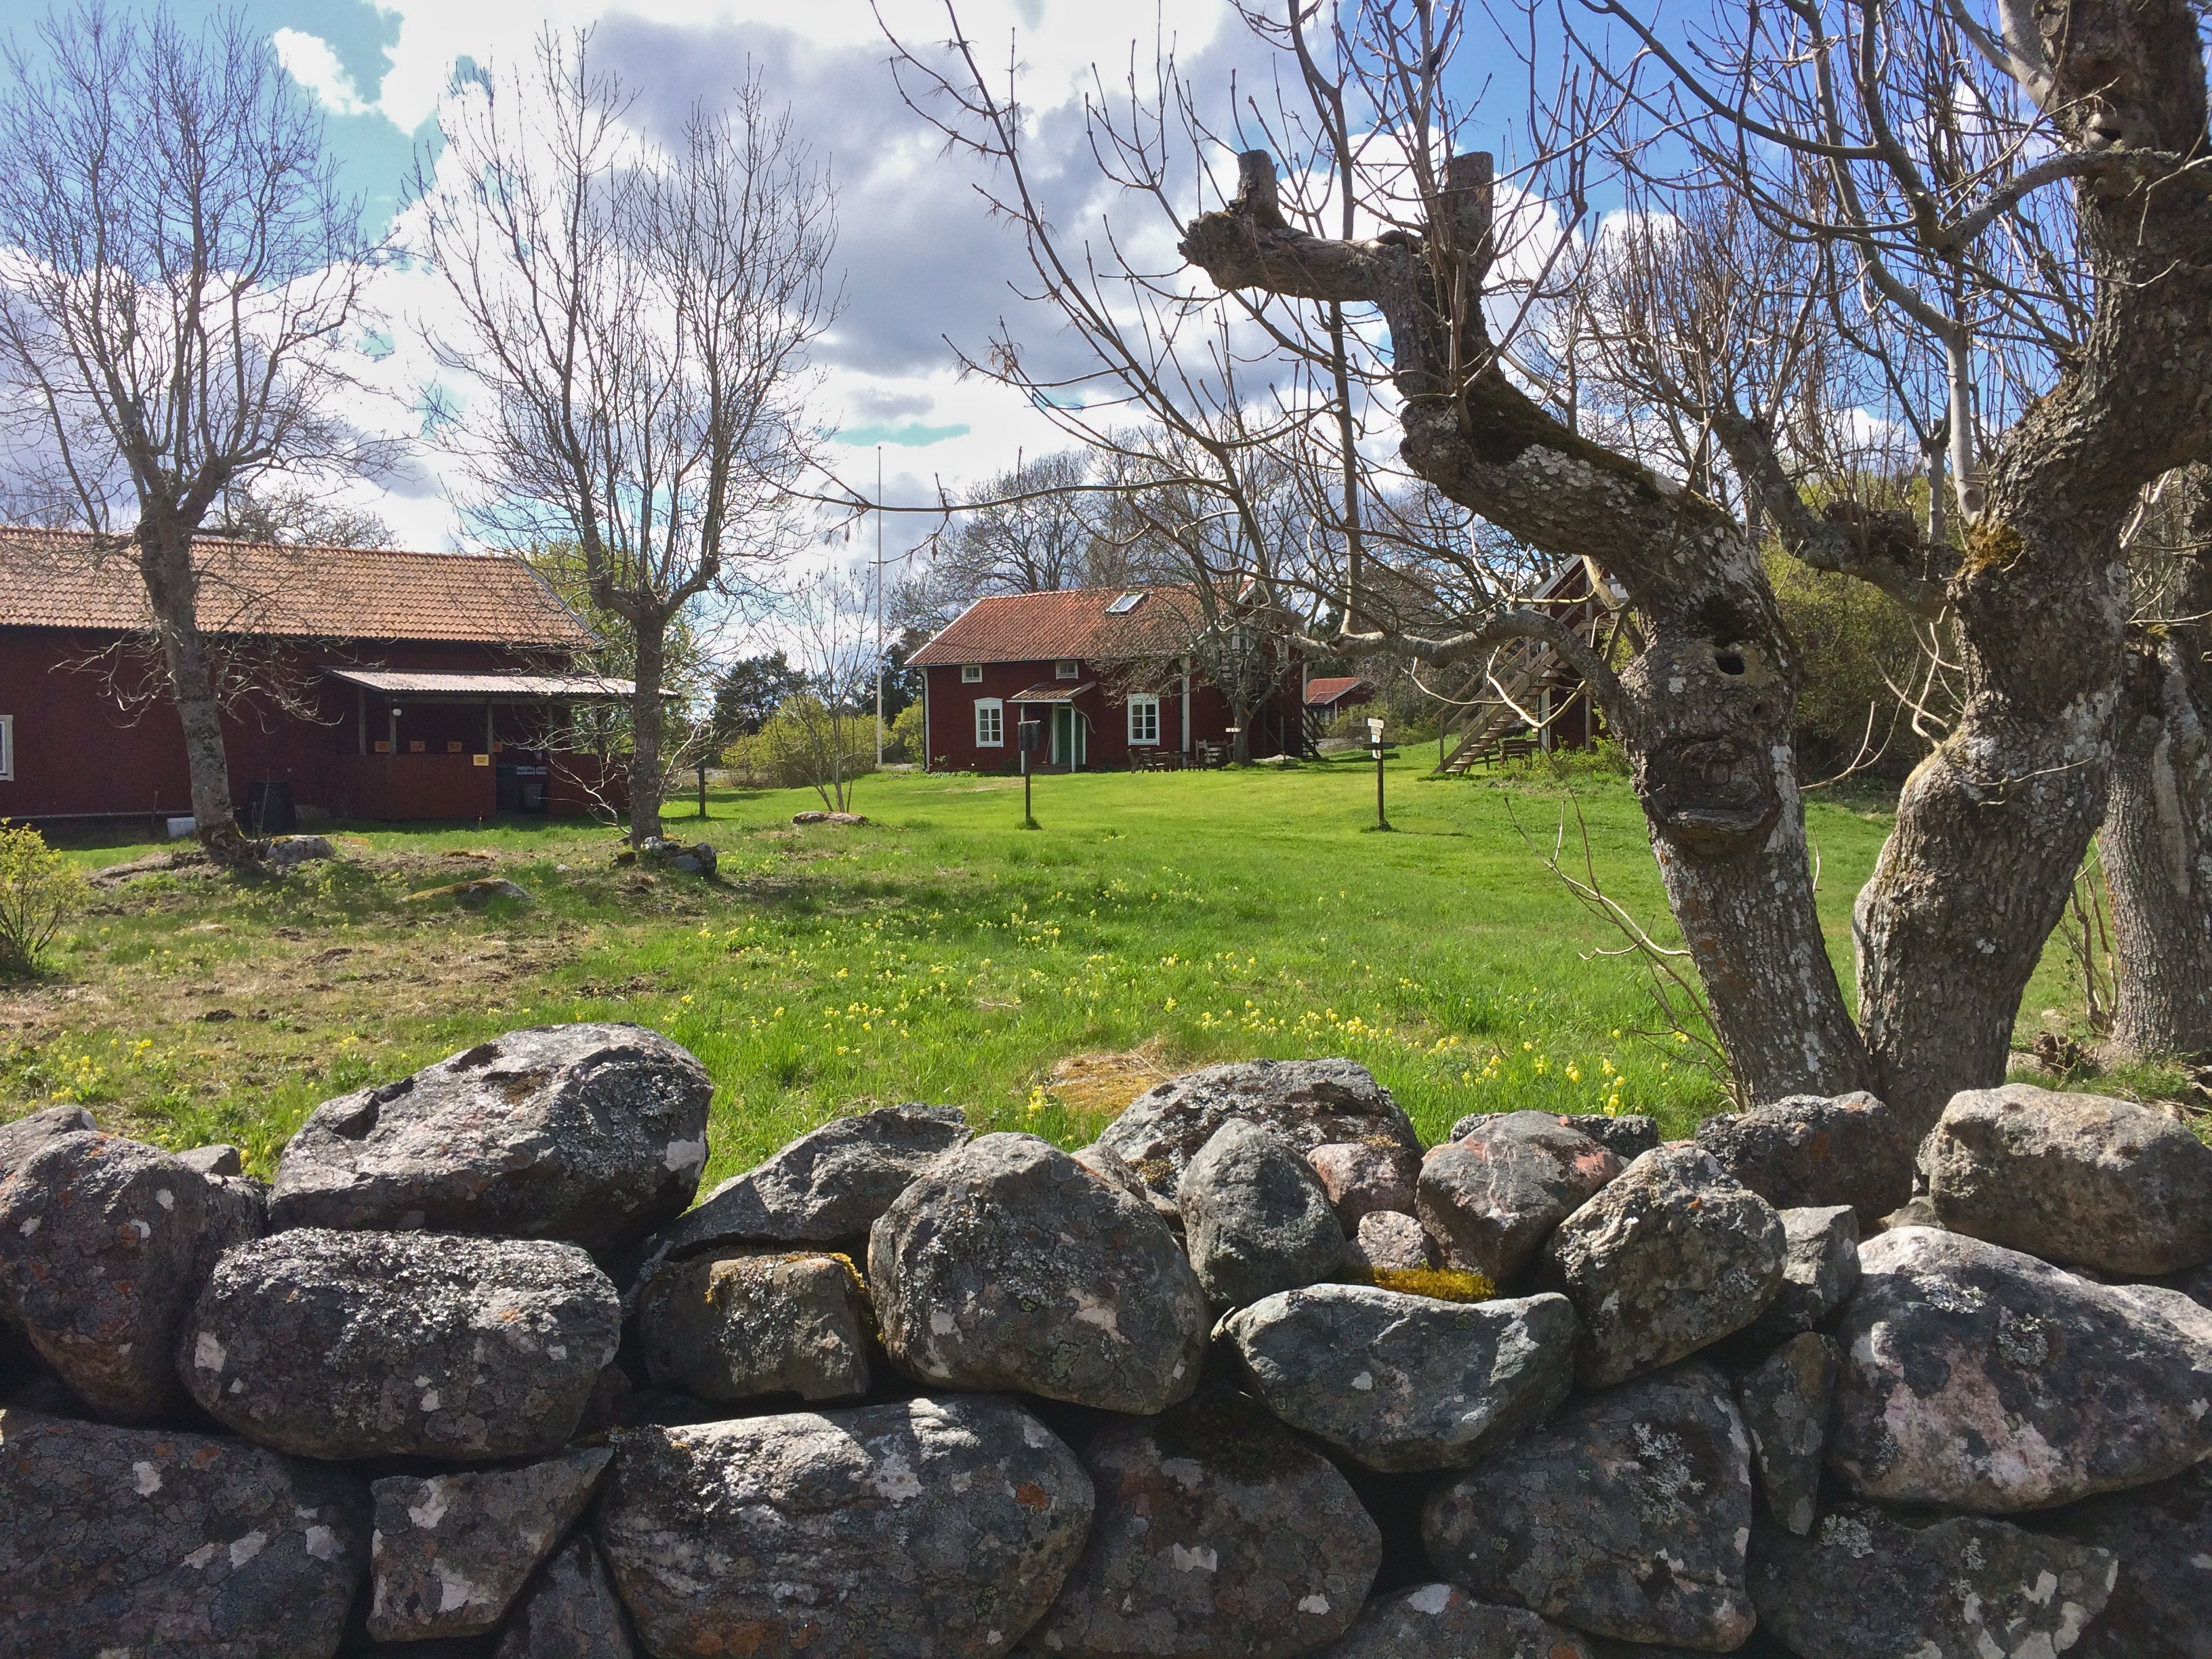 Bakom en stenmur finns öppen gräsmark med flera träd och mindre träbyggnader.